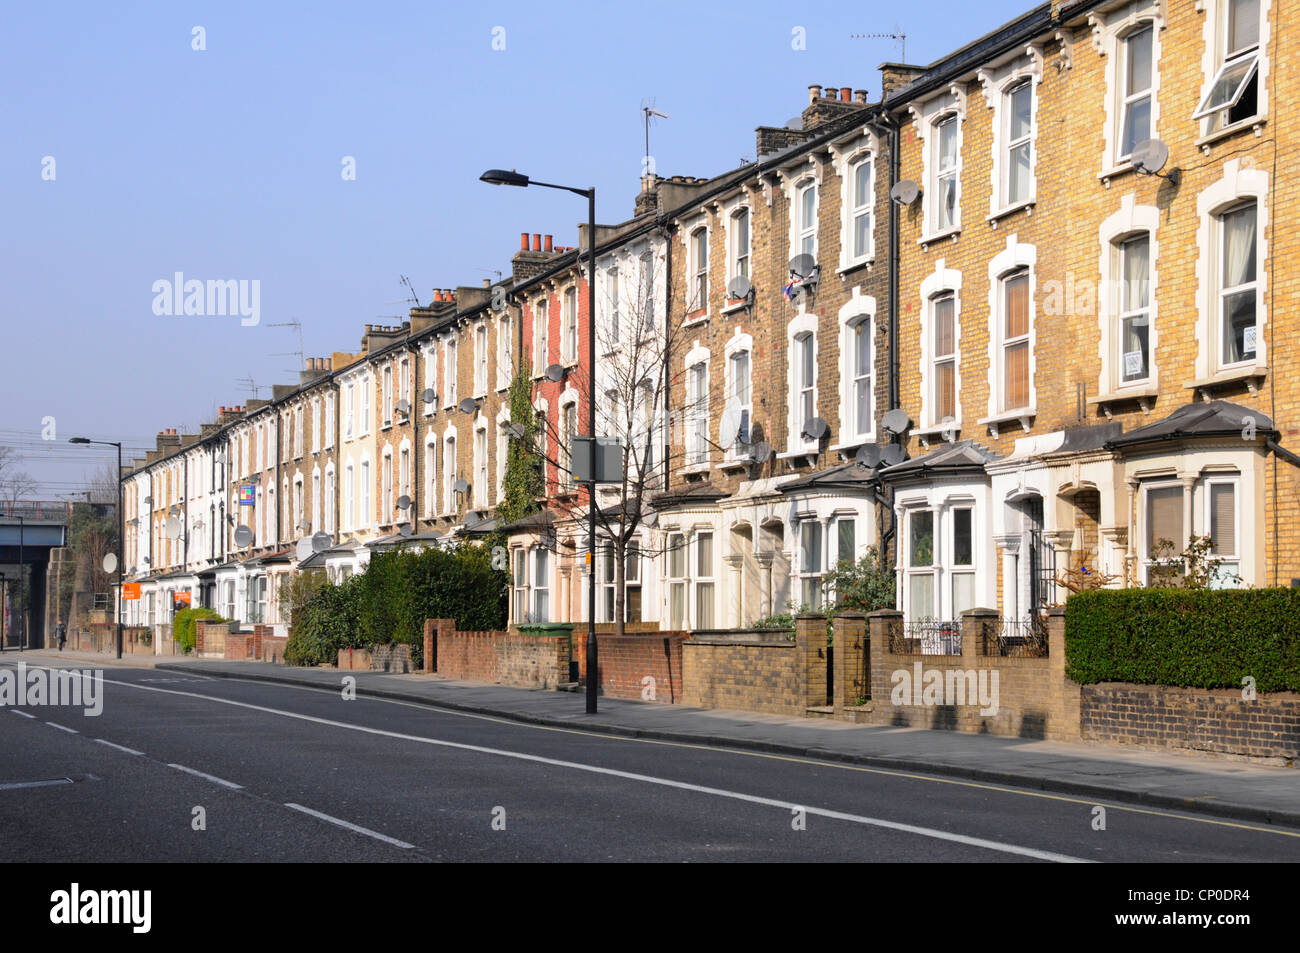 Hay una larga fila de apartamentos y apartamentos antiguos de tres pisos con terrazas, sin coches aparcados ni tráfico en Hackney London, cerca del centro de la ciudad y de la estación de tren, Inglaterra, Reino Unido Foto de stock